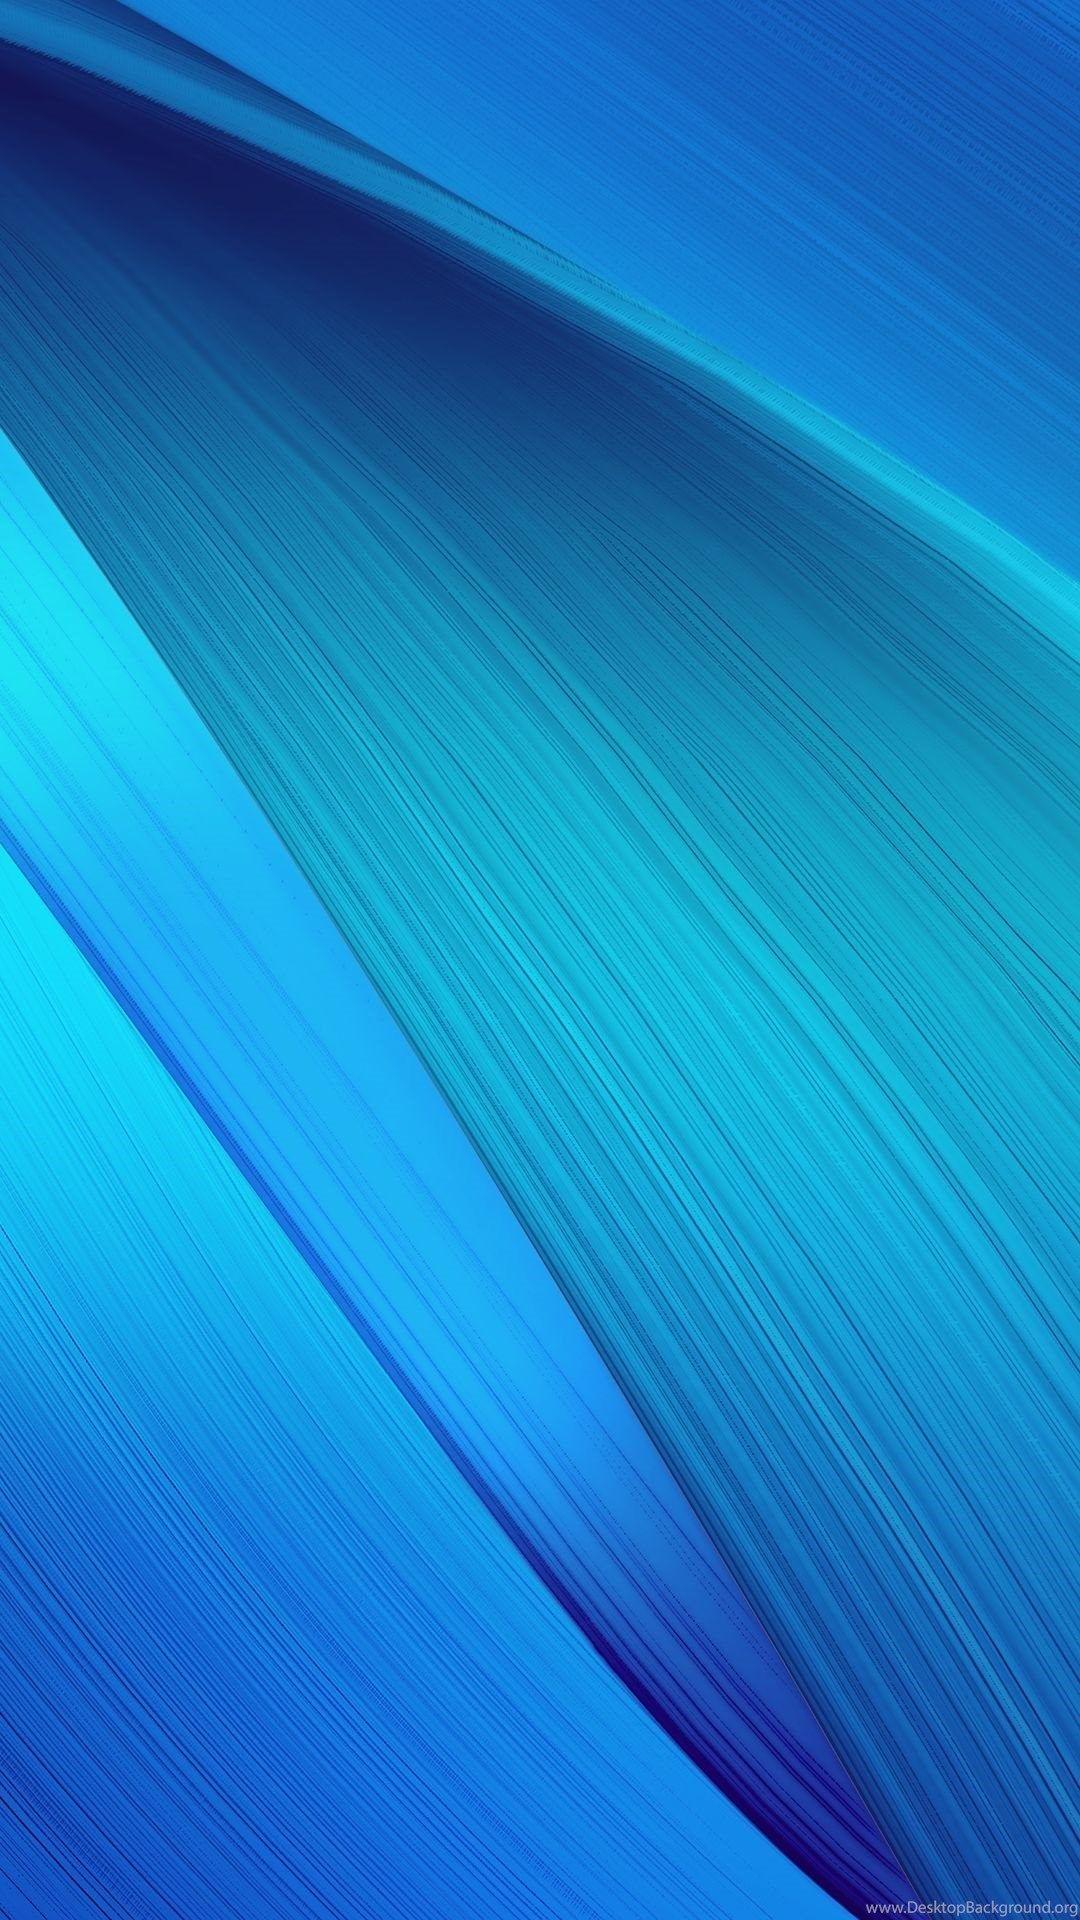 Download Asus Zenfone 2 Stock Wallpaper. Desktop Background